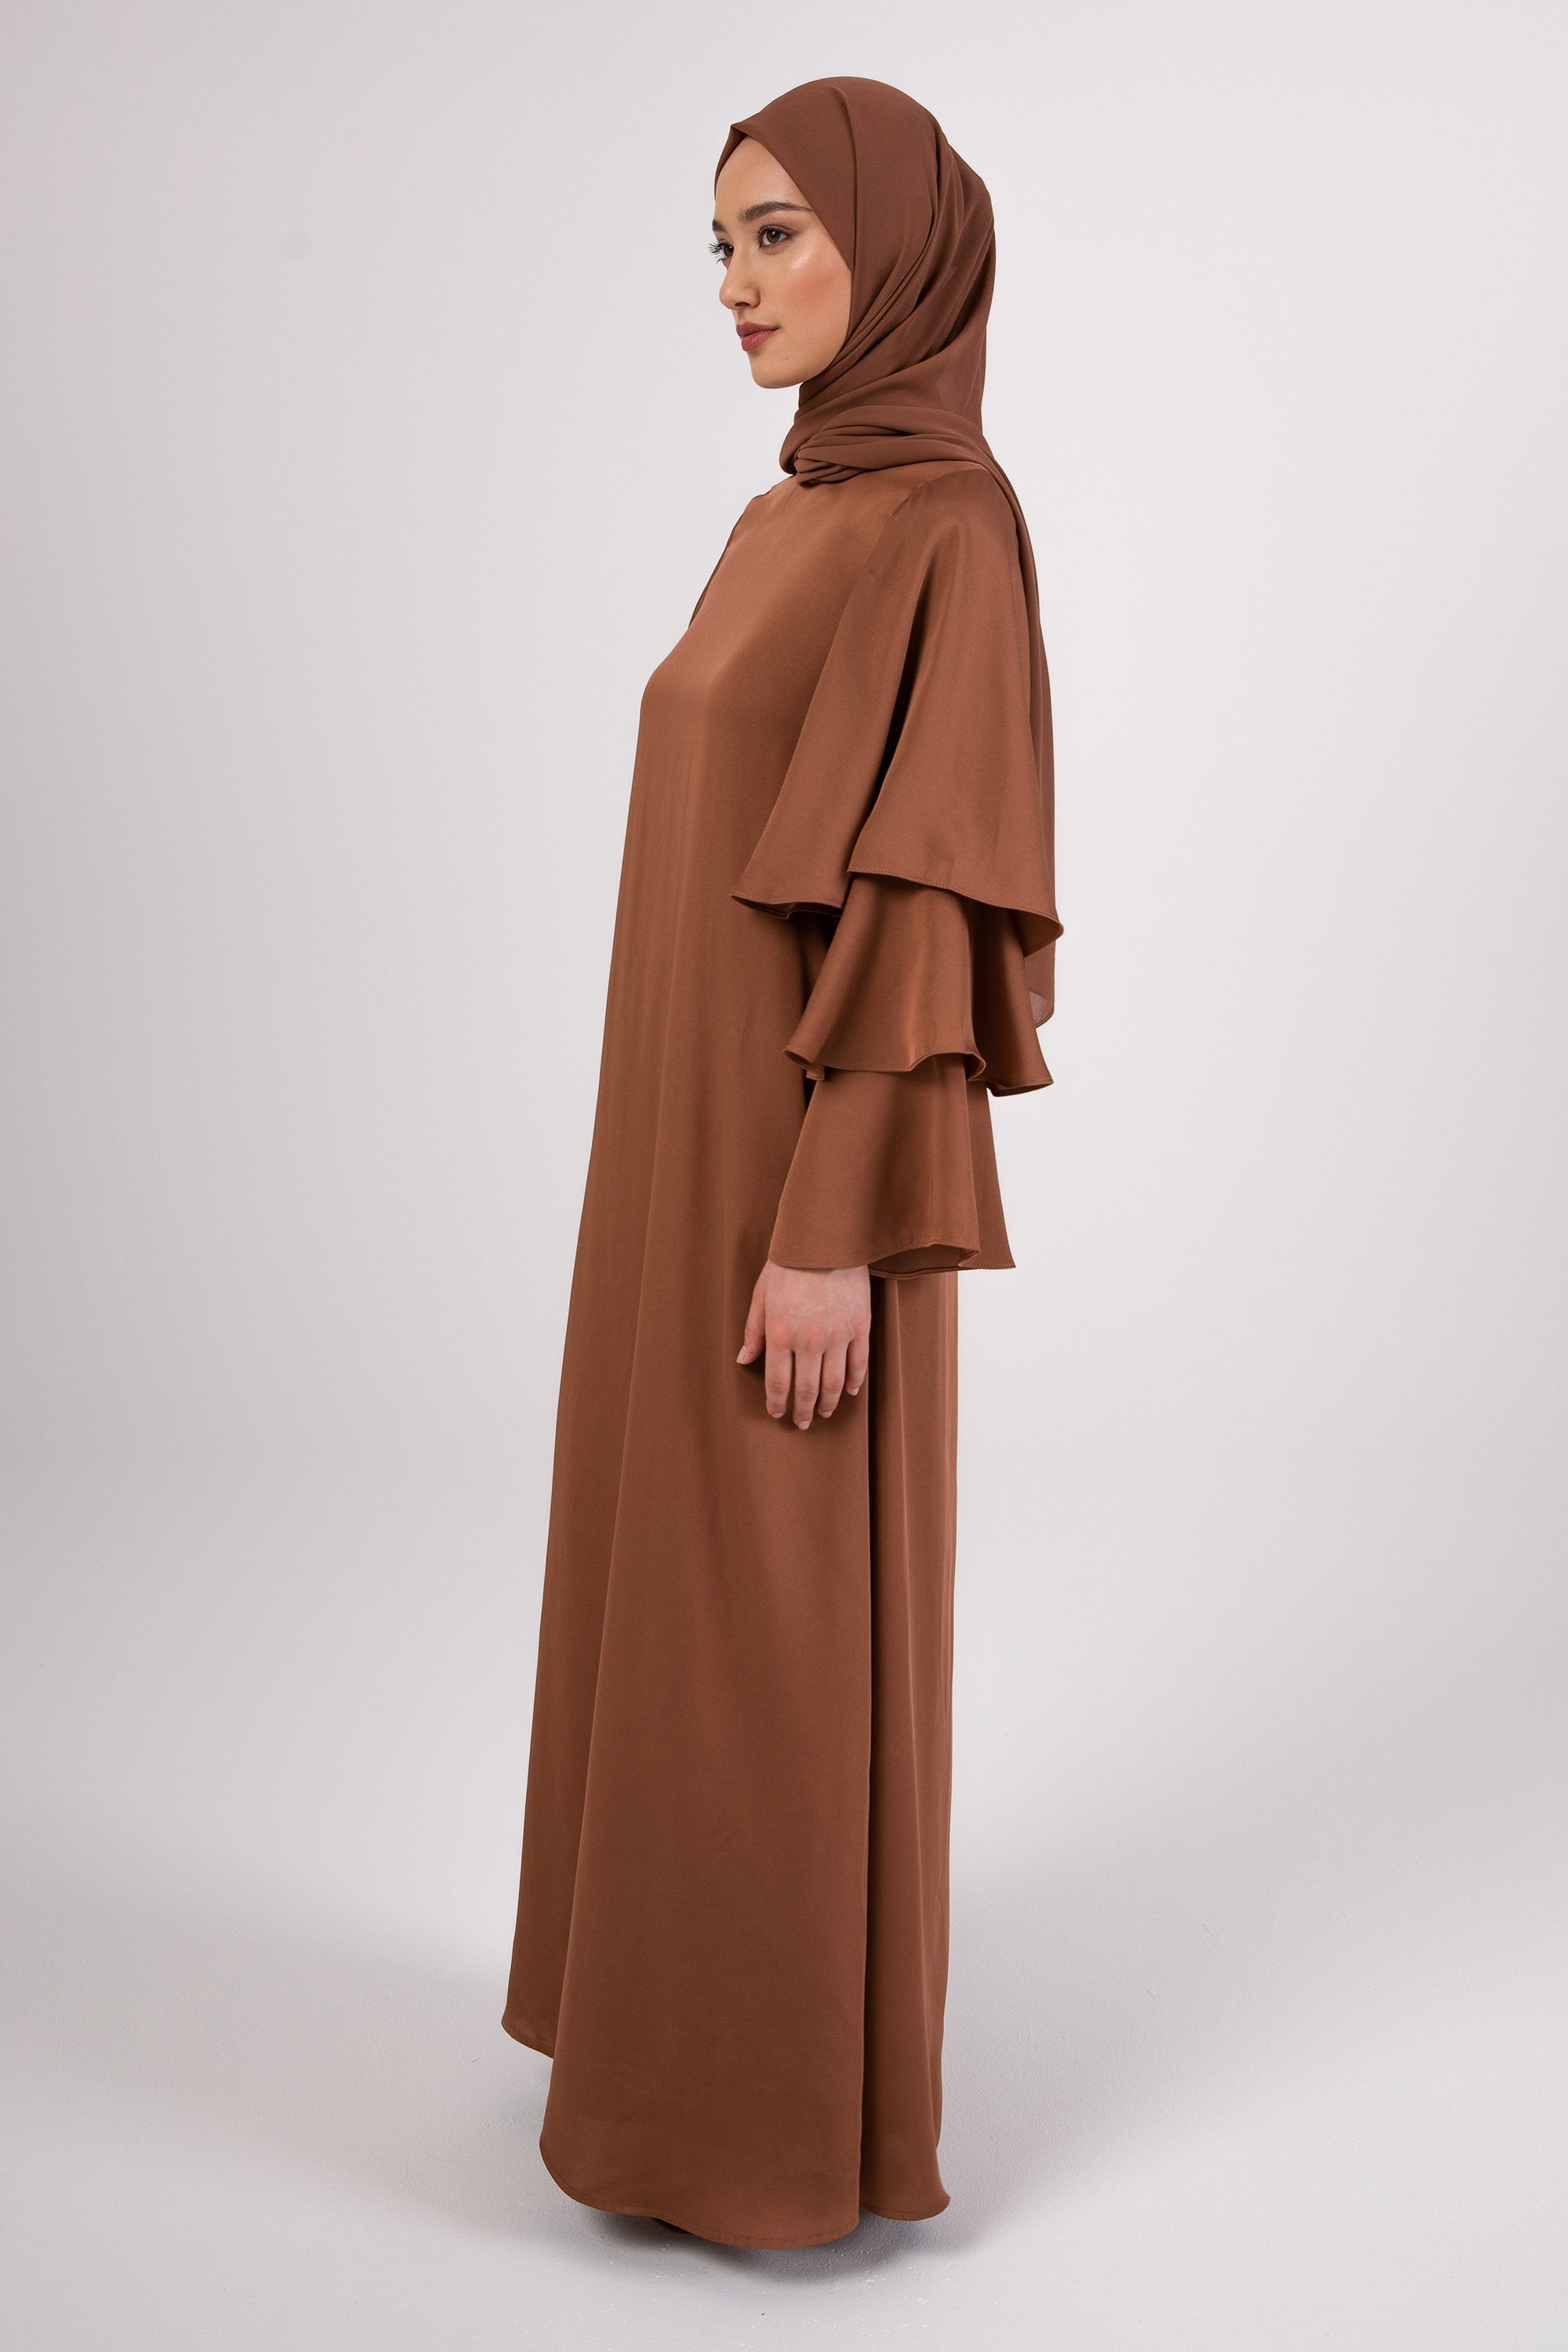 Celia Ruffle Sleeve Maxi Dress - Mushroom Veiled 